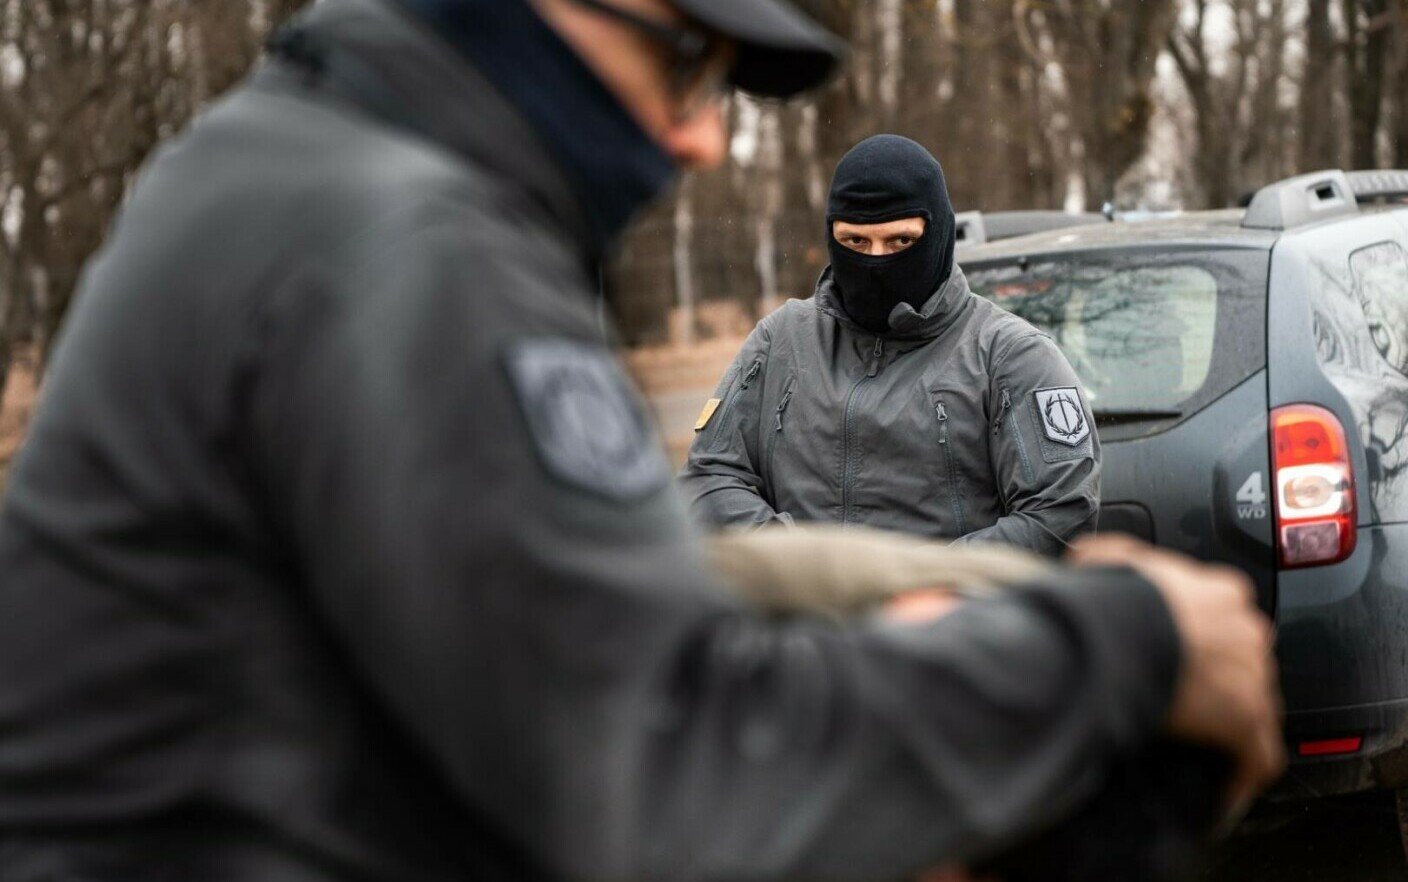  23 de poliţişti de frontieră de la Calafat, arestaţi pentru 30 de zile, pentru şpăgi repetate